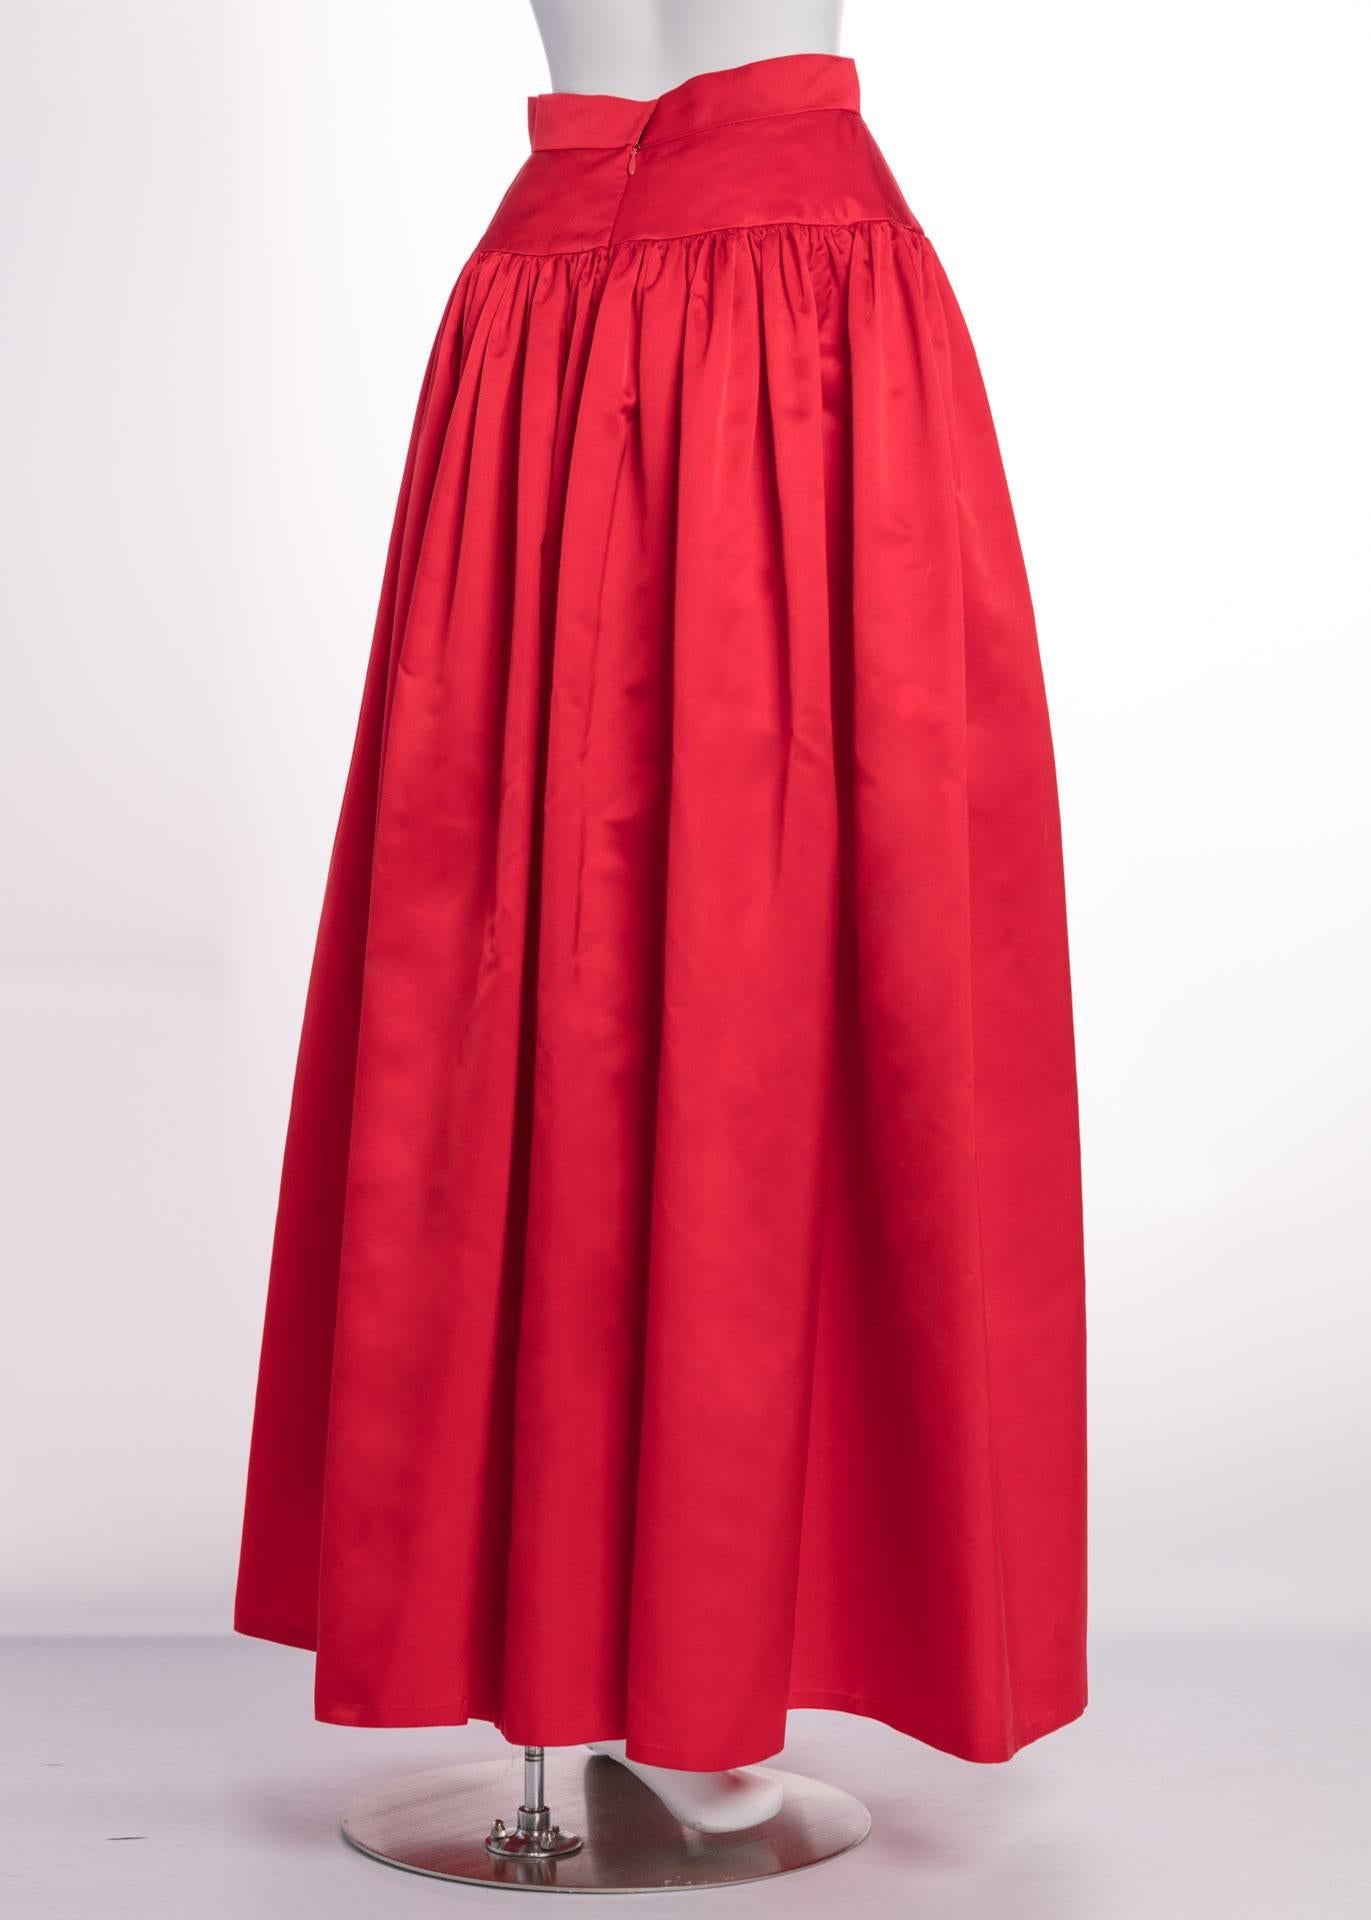 Women's Vintage Bill Blass Crimson Red Satin Ball Gown Skirt